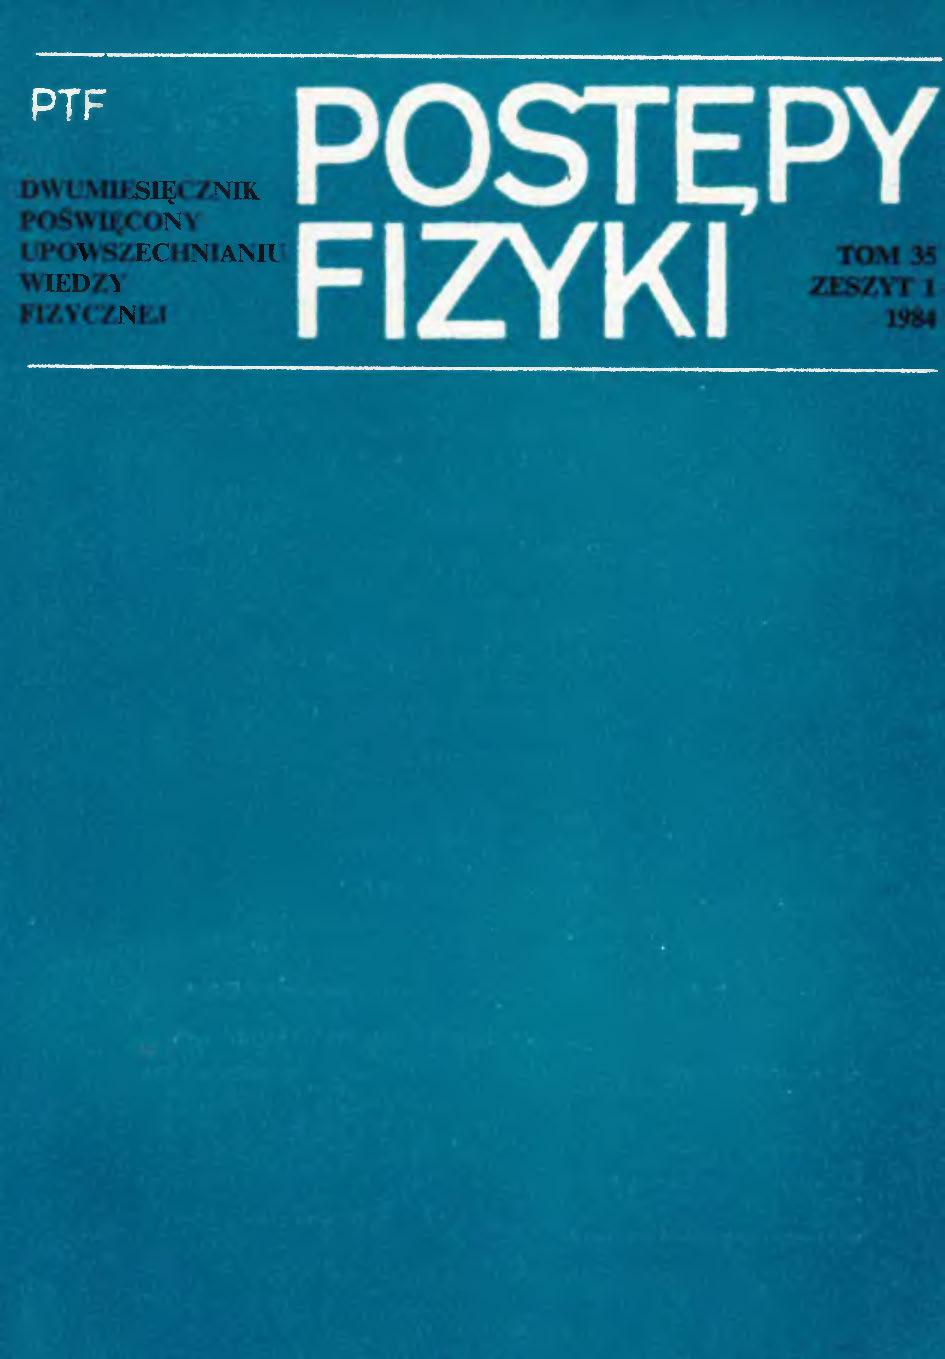 Postępy Fizyki 35 (1) 1984